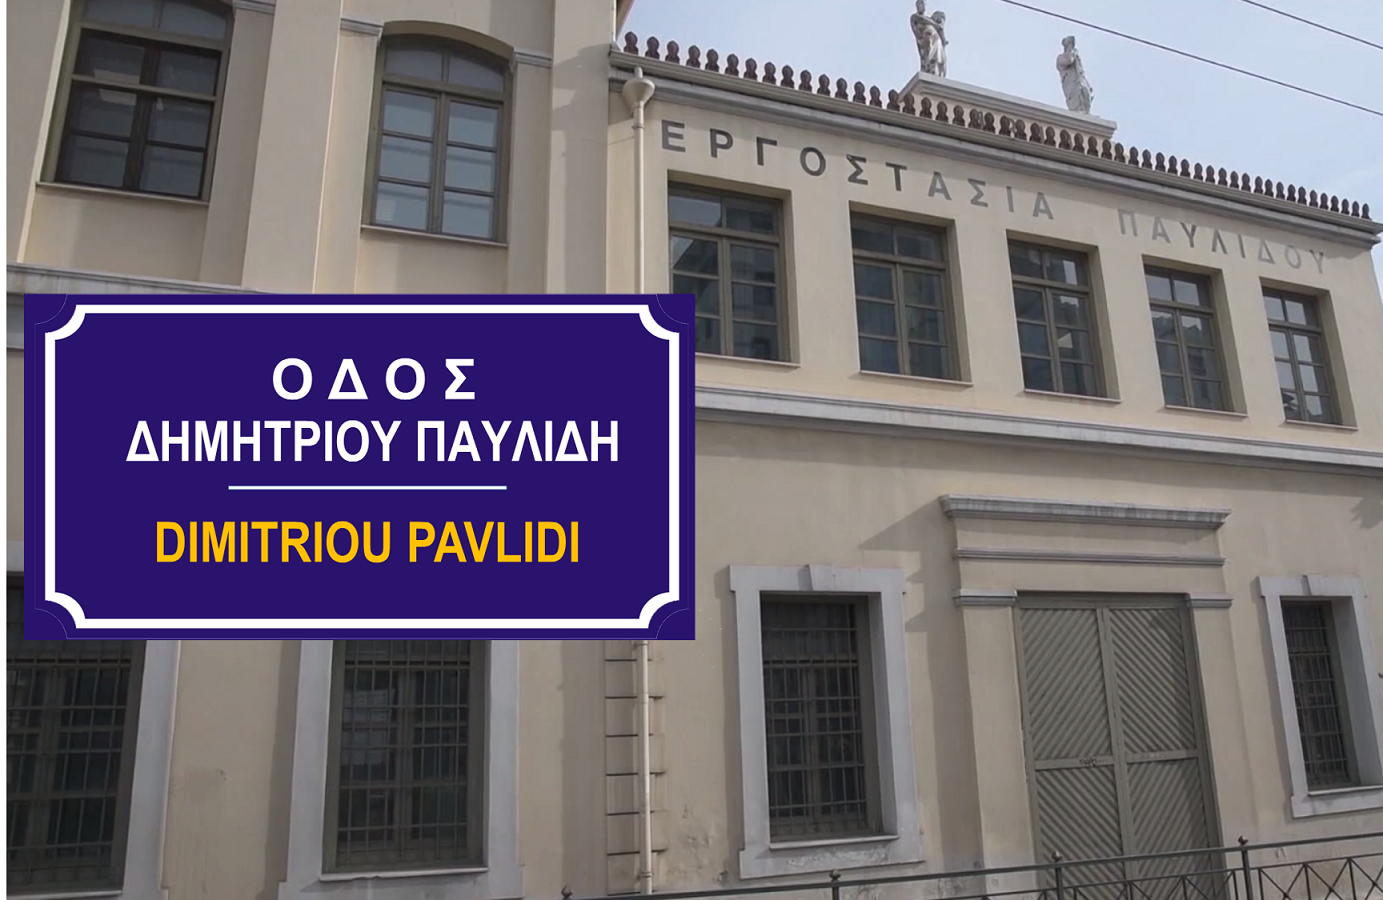 Οδός Δημητρίου Παυλίδη, ένα καινούριο σημείο αναφοράς για το Εργοστάσιο Παυλίδη και την ιστορία του